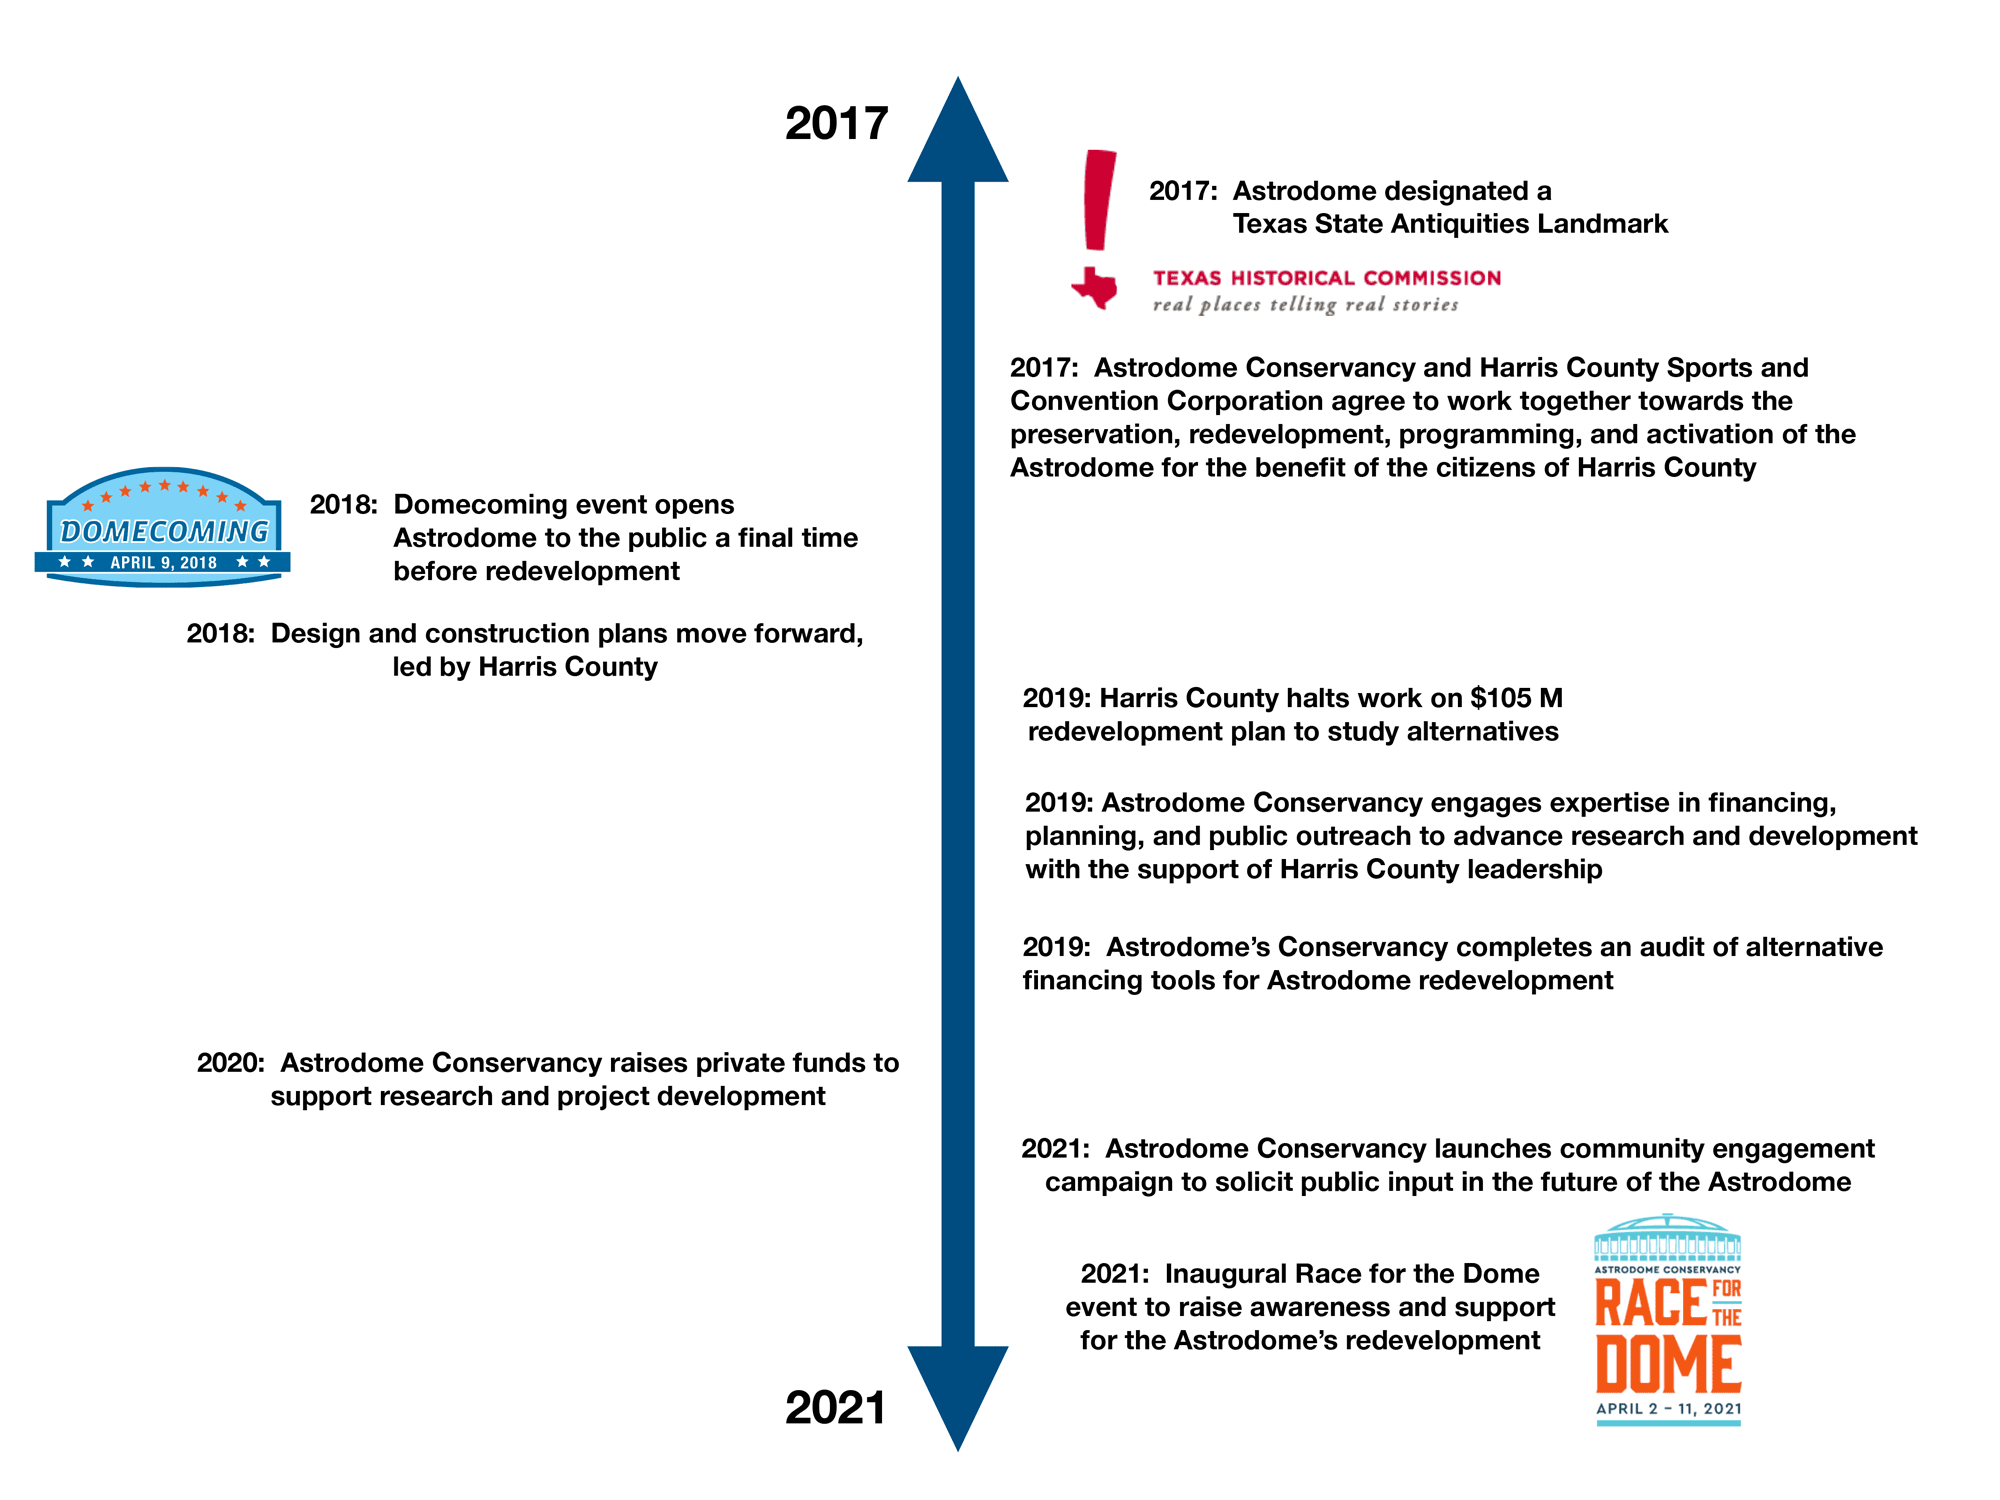 Timeline 2017-2021